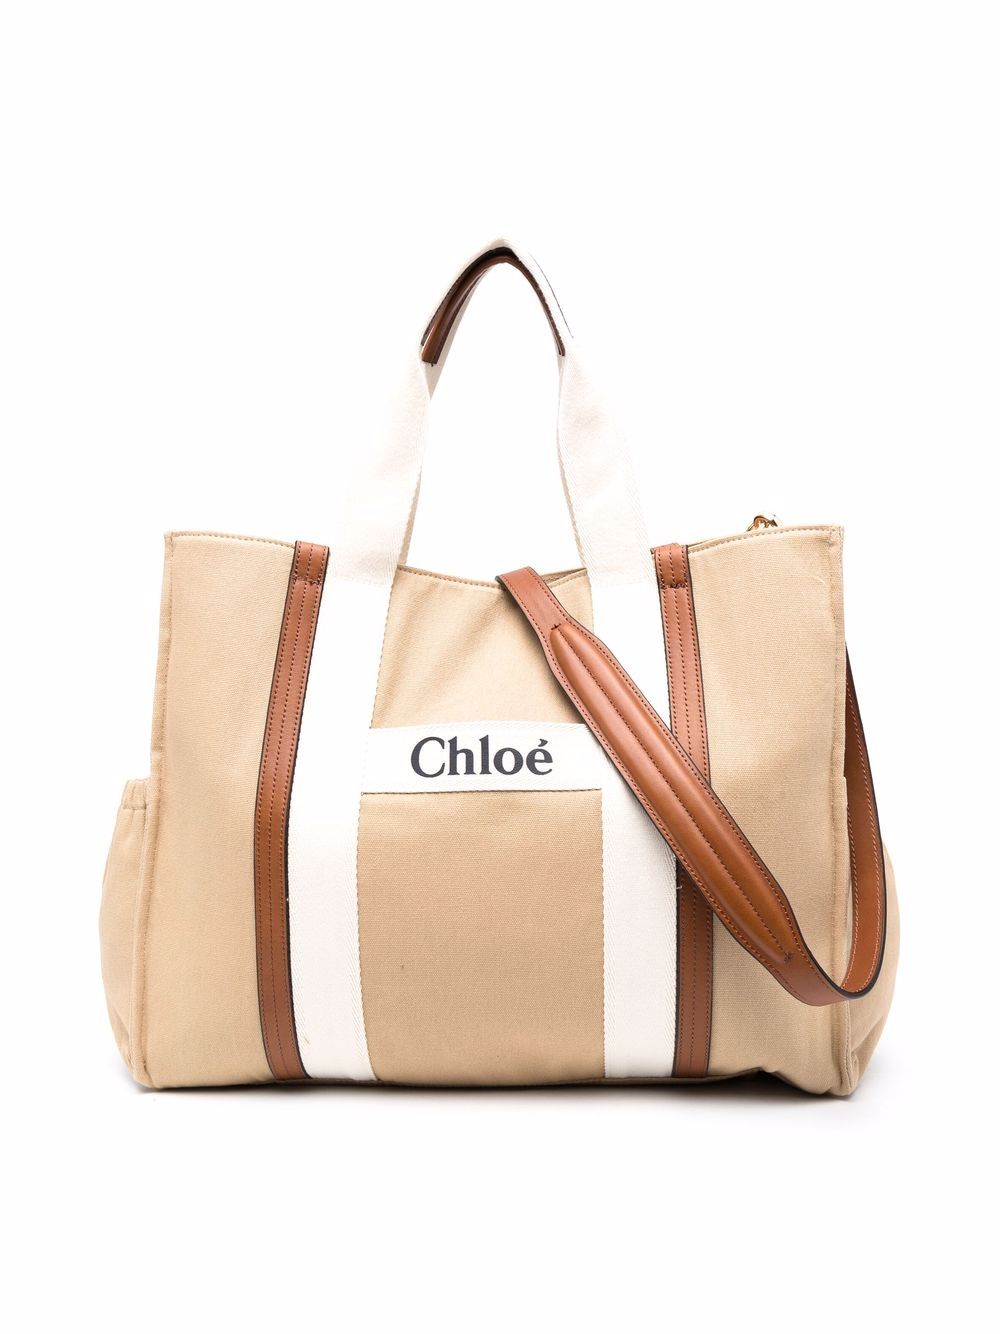 Chloé Bags - Farfetch Canada